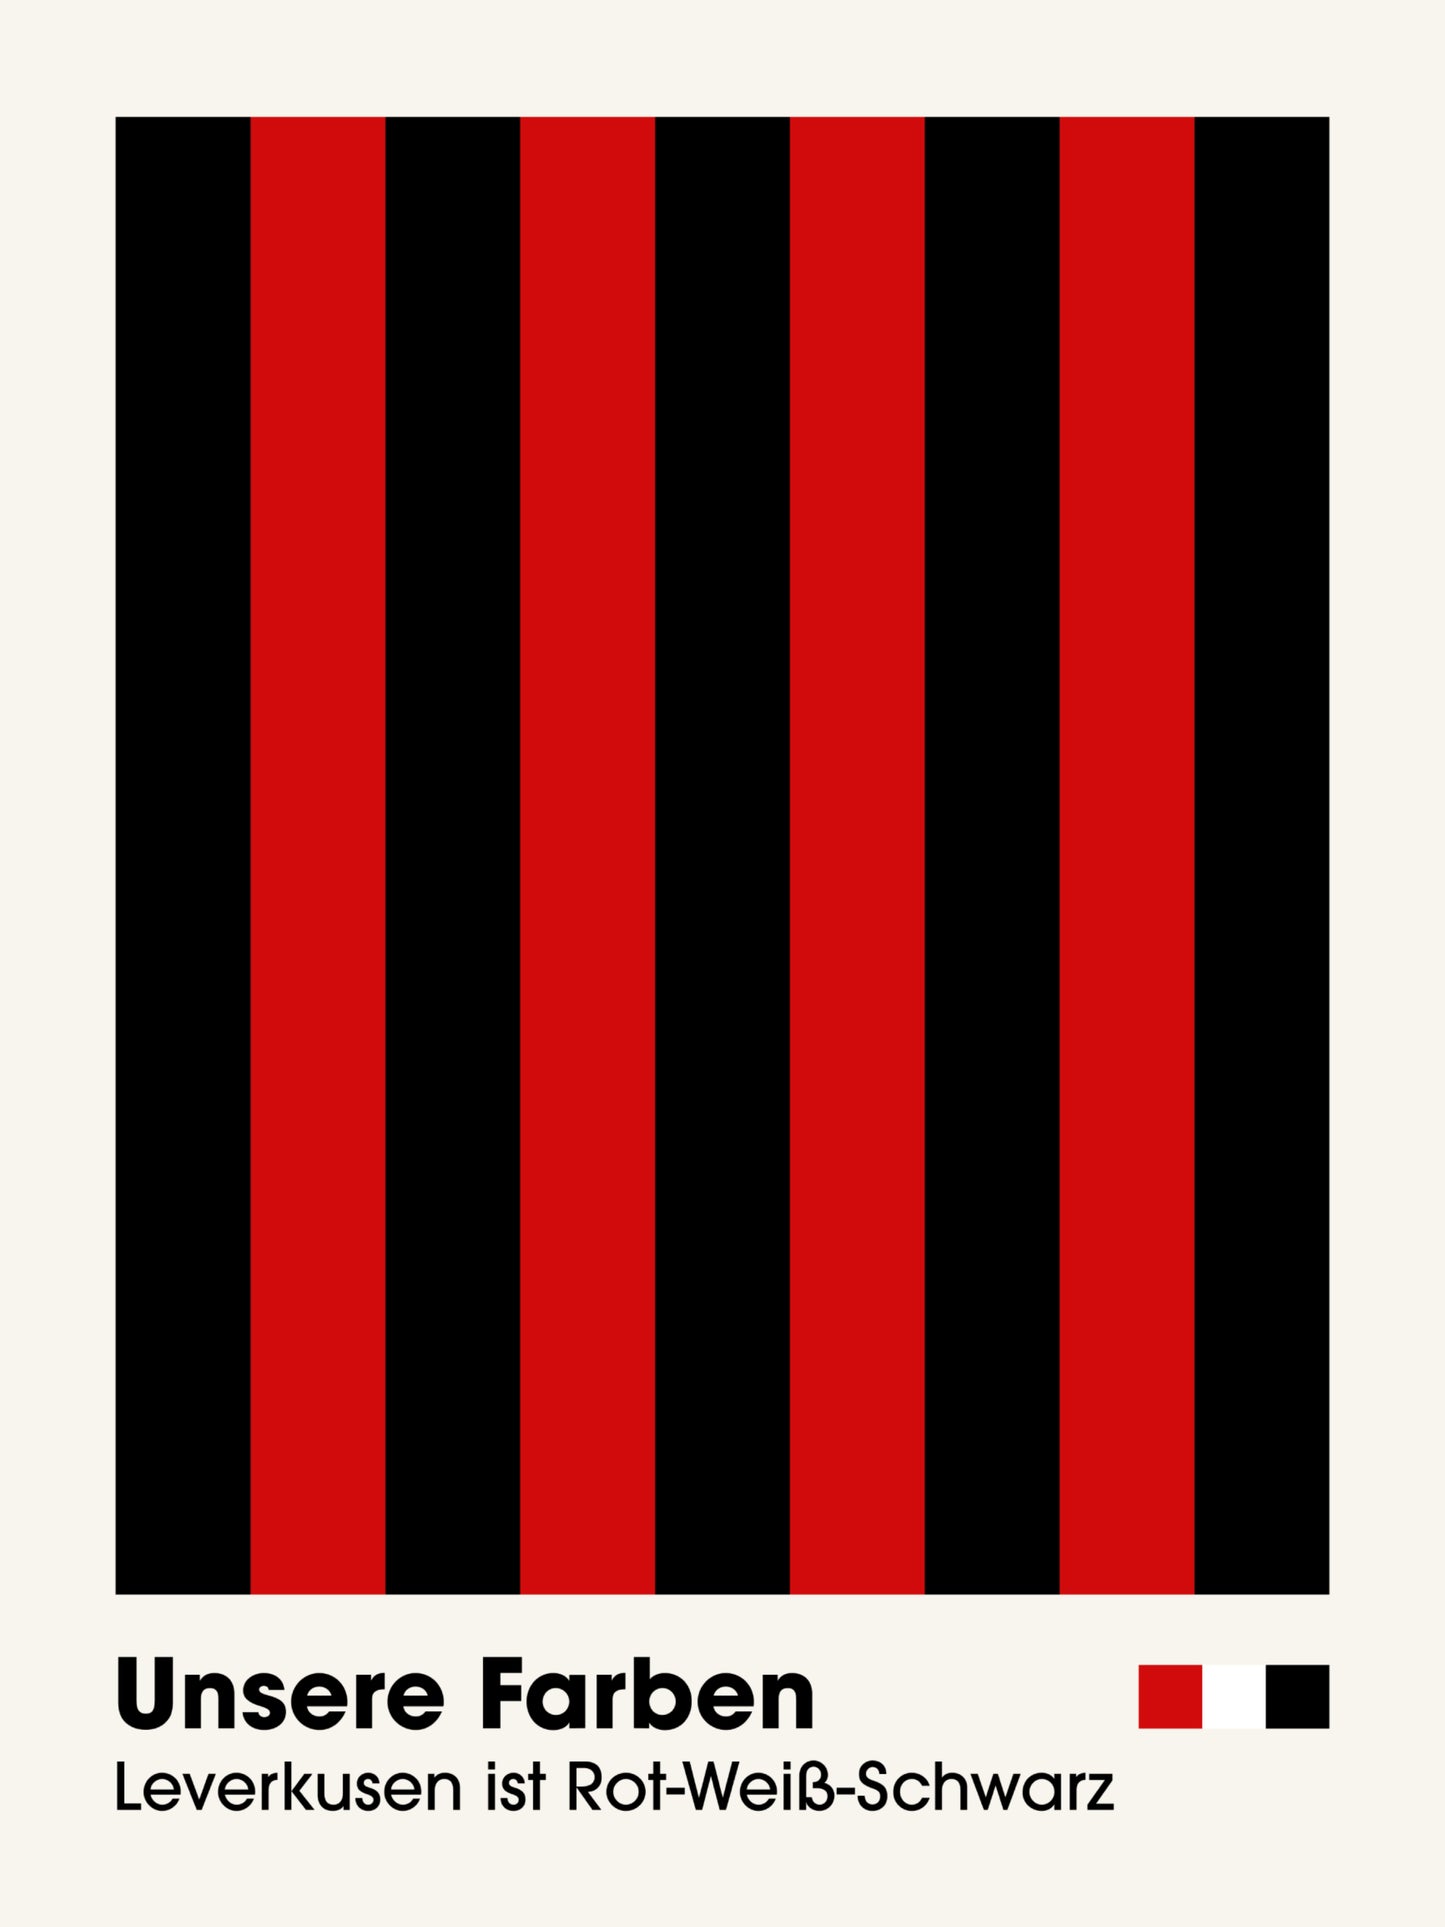 Leverkusen - "Farben" Fußballposter